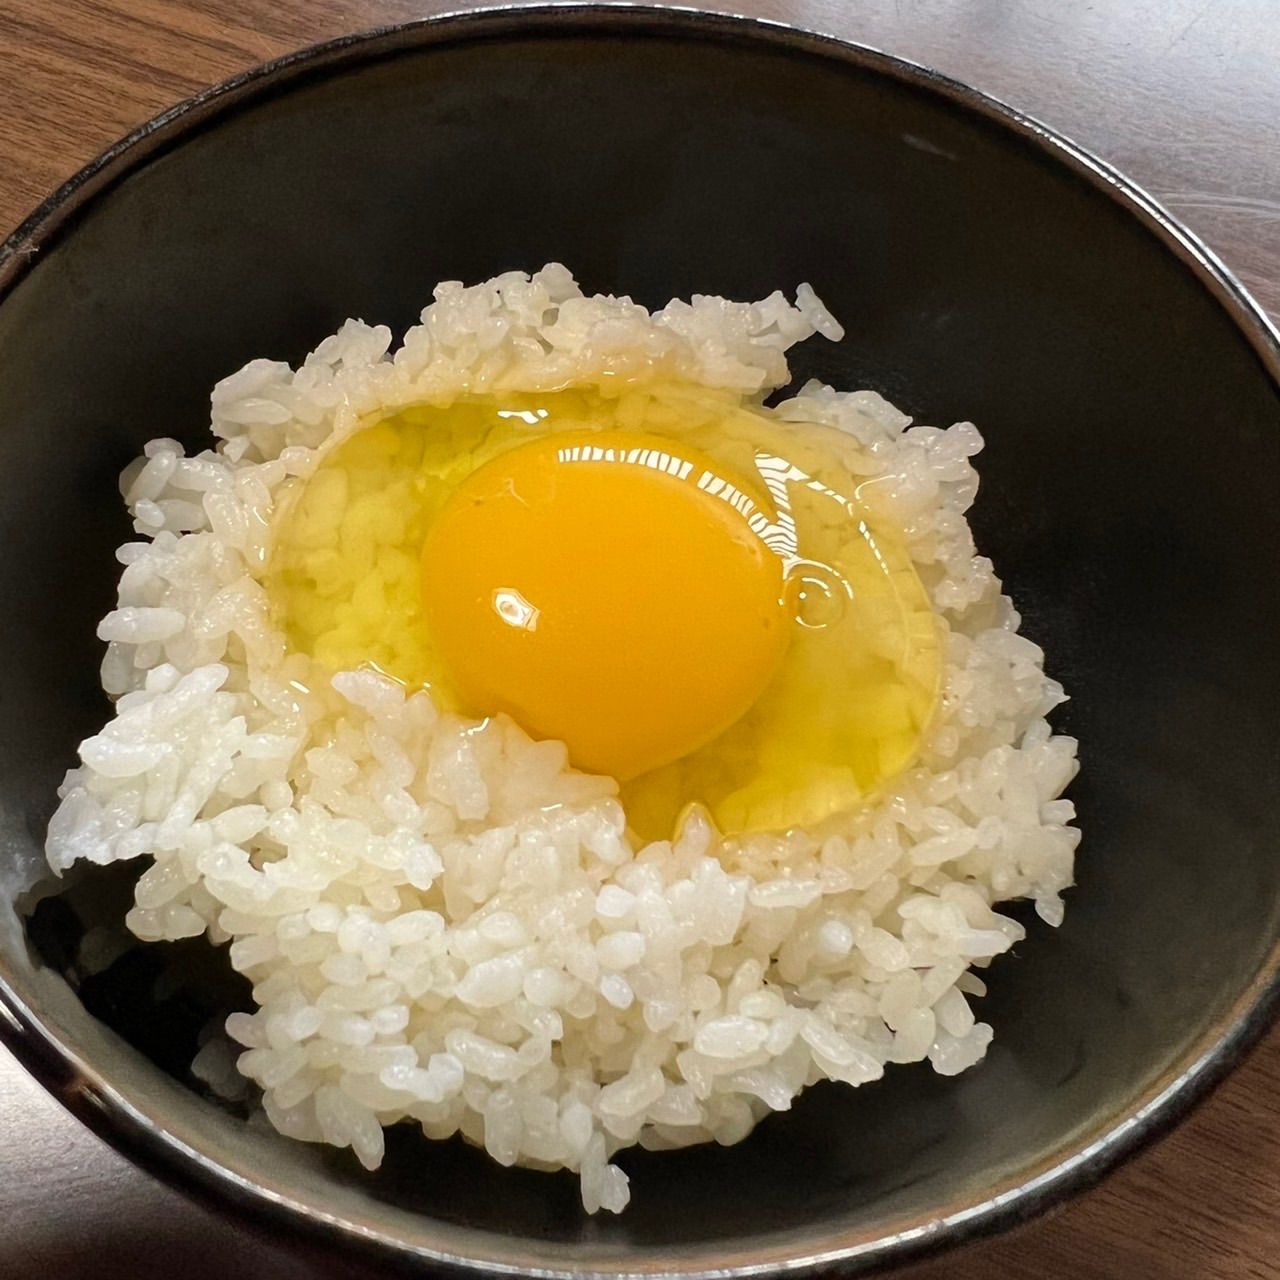 売れ筋ランキングも 160個入り 宮下養鶏の朝採れ平飼い卵 | artfive.co.jp